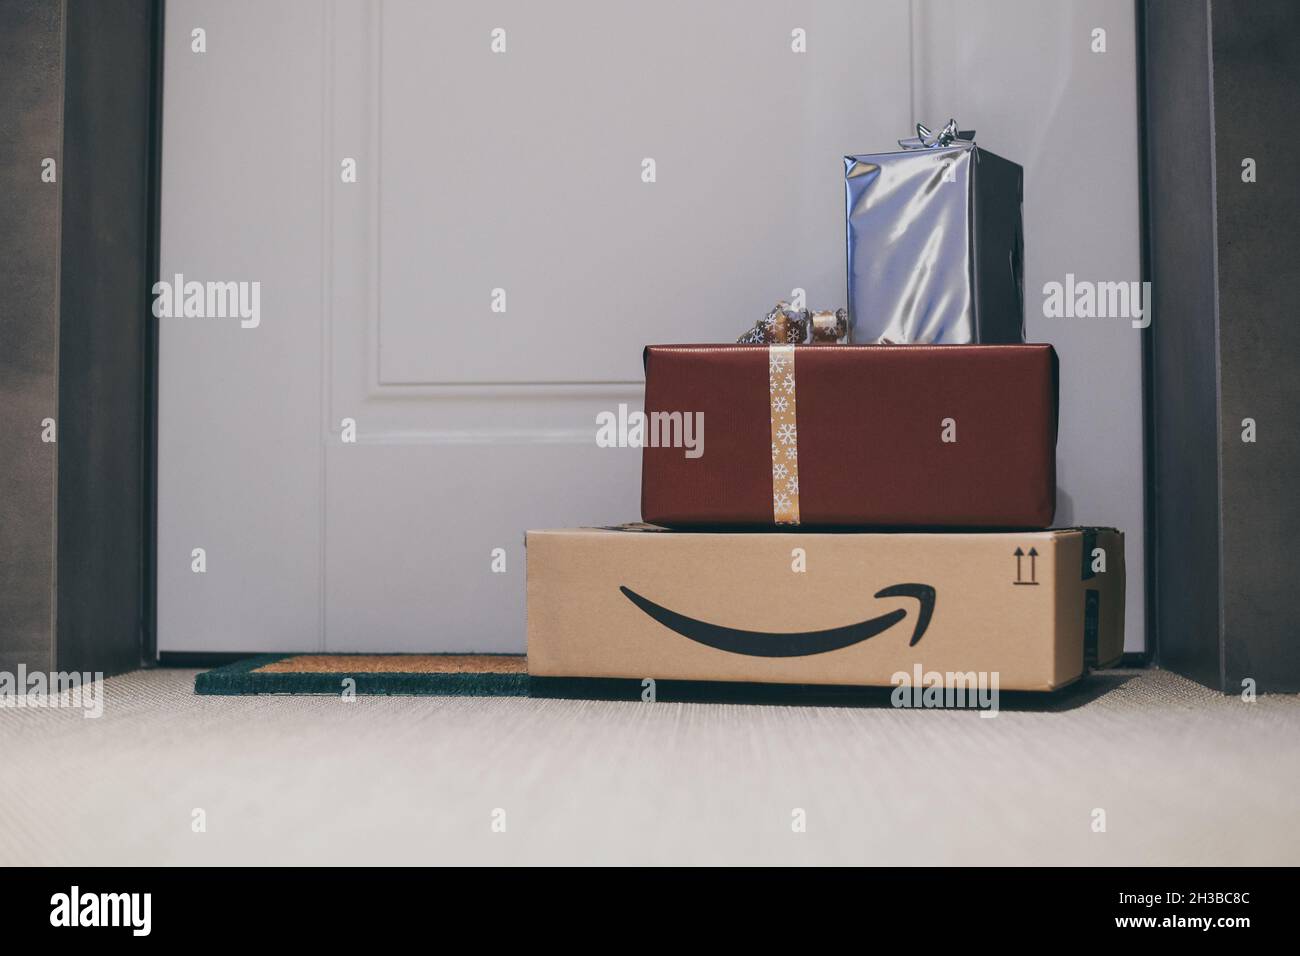 Amazon Lieferung An Die Tür Stockfotos und -bilder Kaufen - Alamy